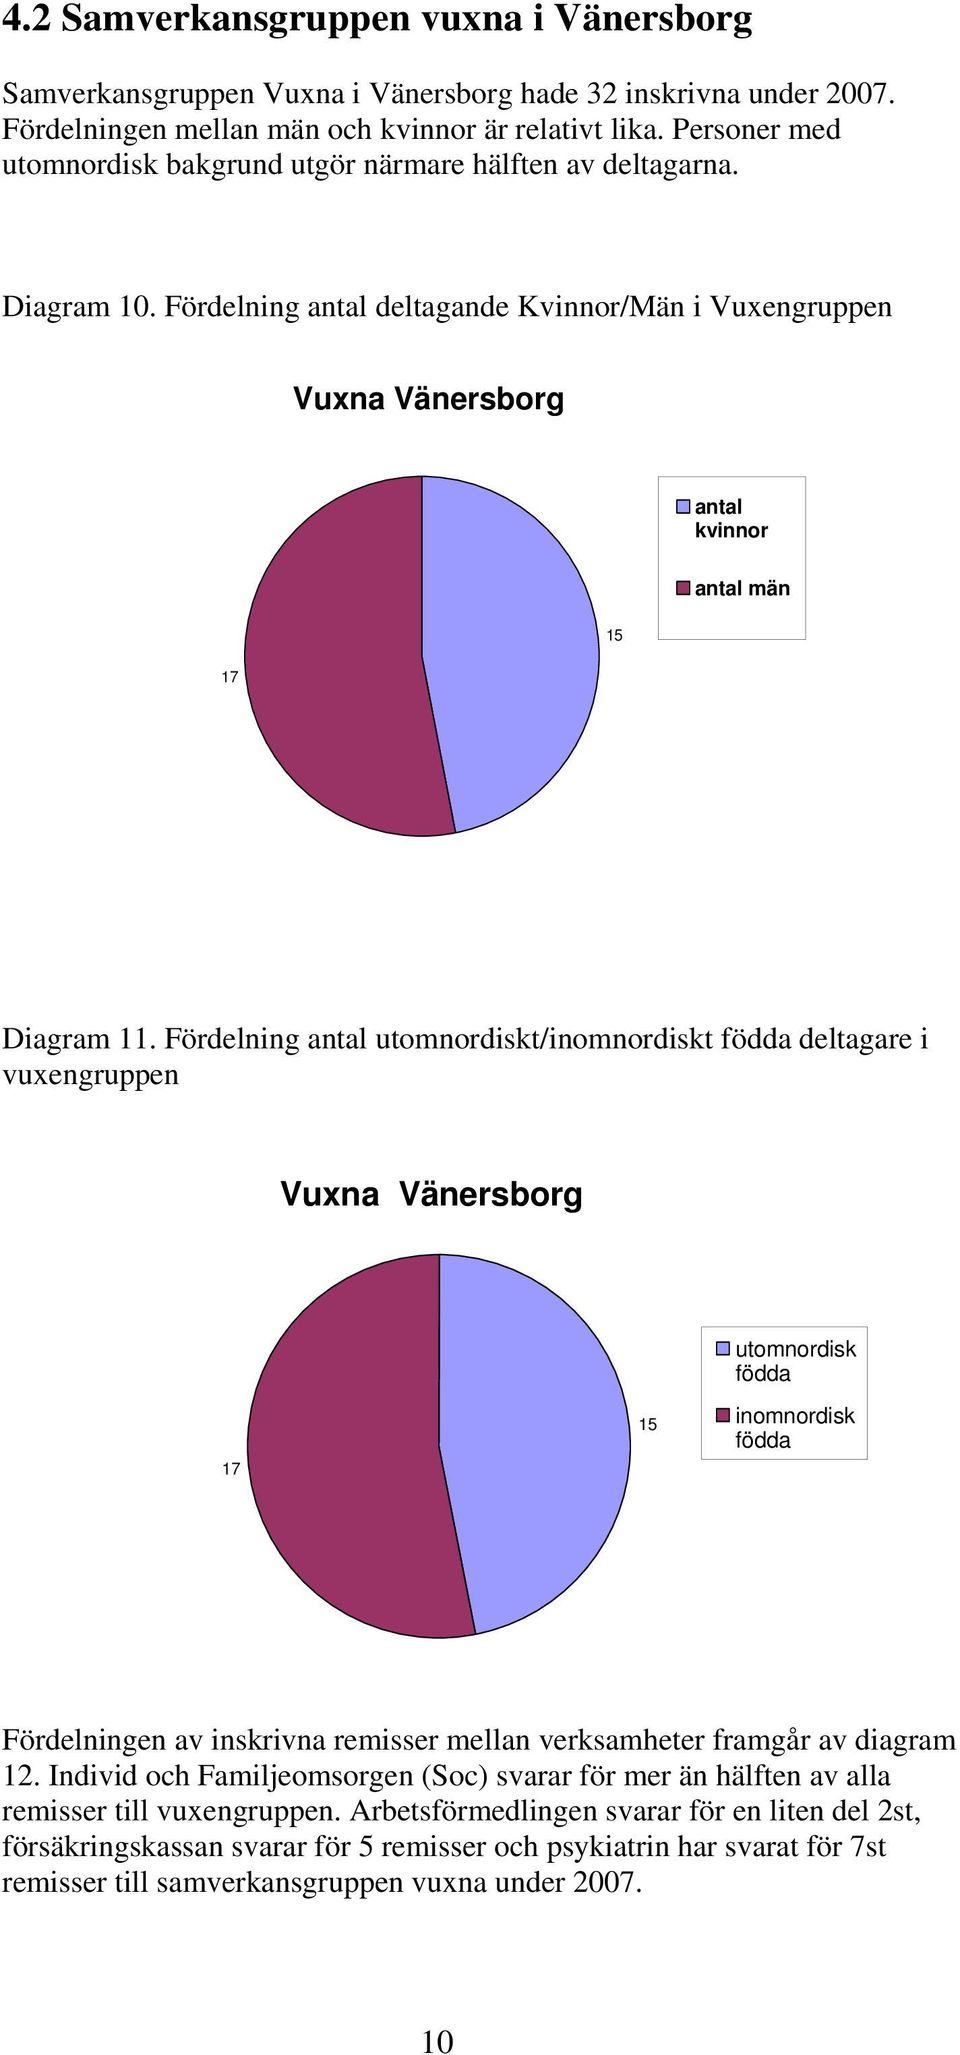 Fördelning antal utomnordiskt/inomnordiskt födda deltagare i vuxengruppen Vuxna Vänersborg utomnordisk födda 7 5 inomnordisk födda Fördelningen av inskrivna remisser mellan verksamheter framgår av